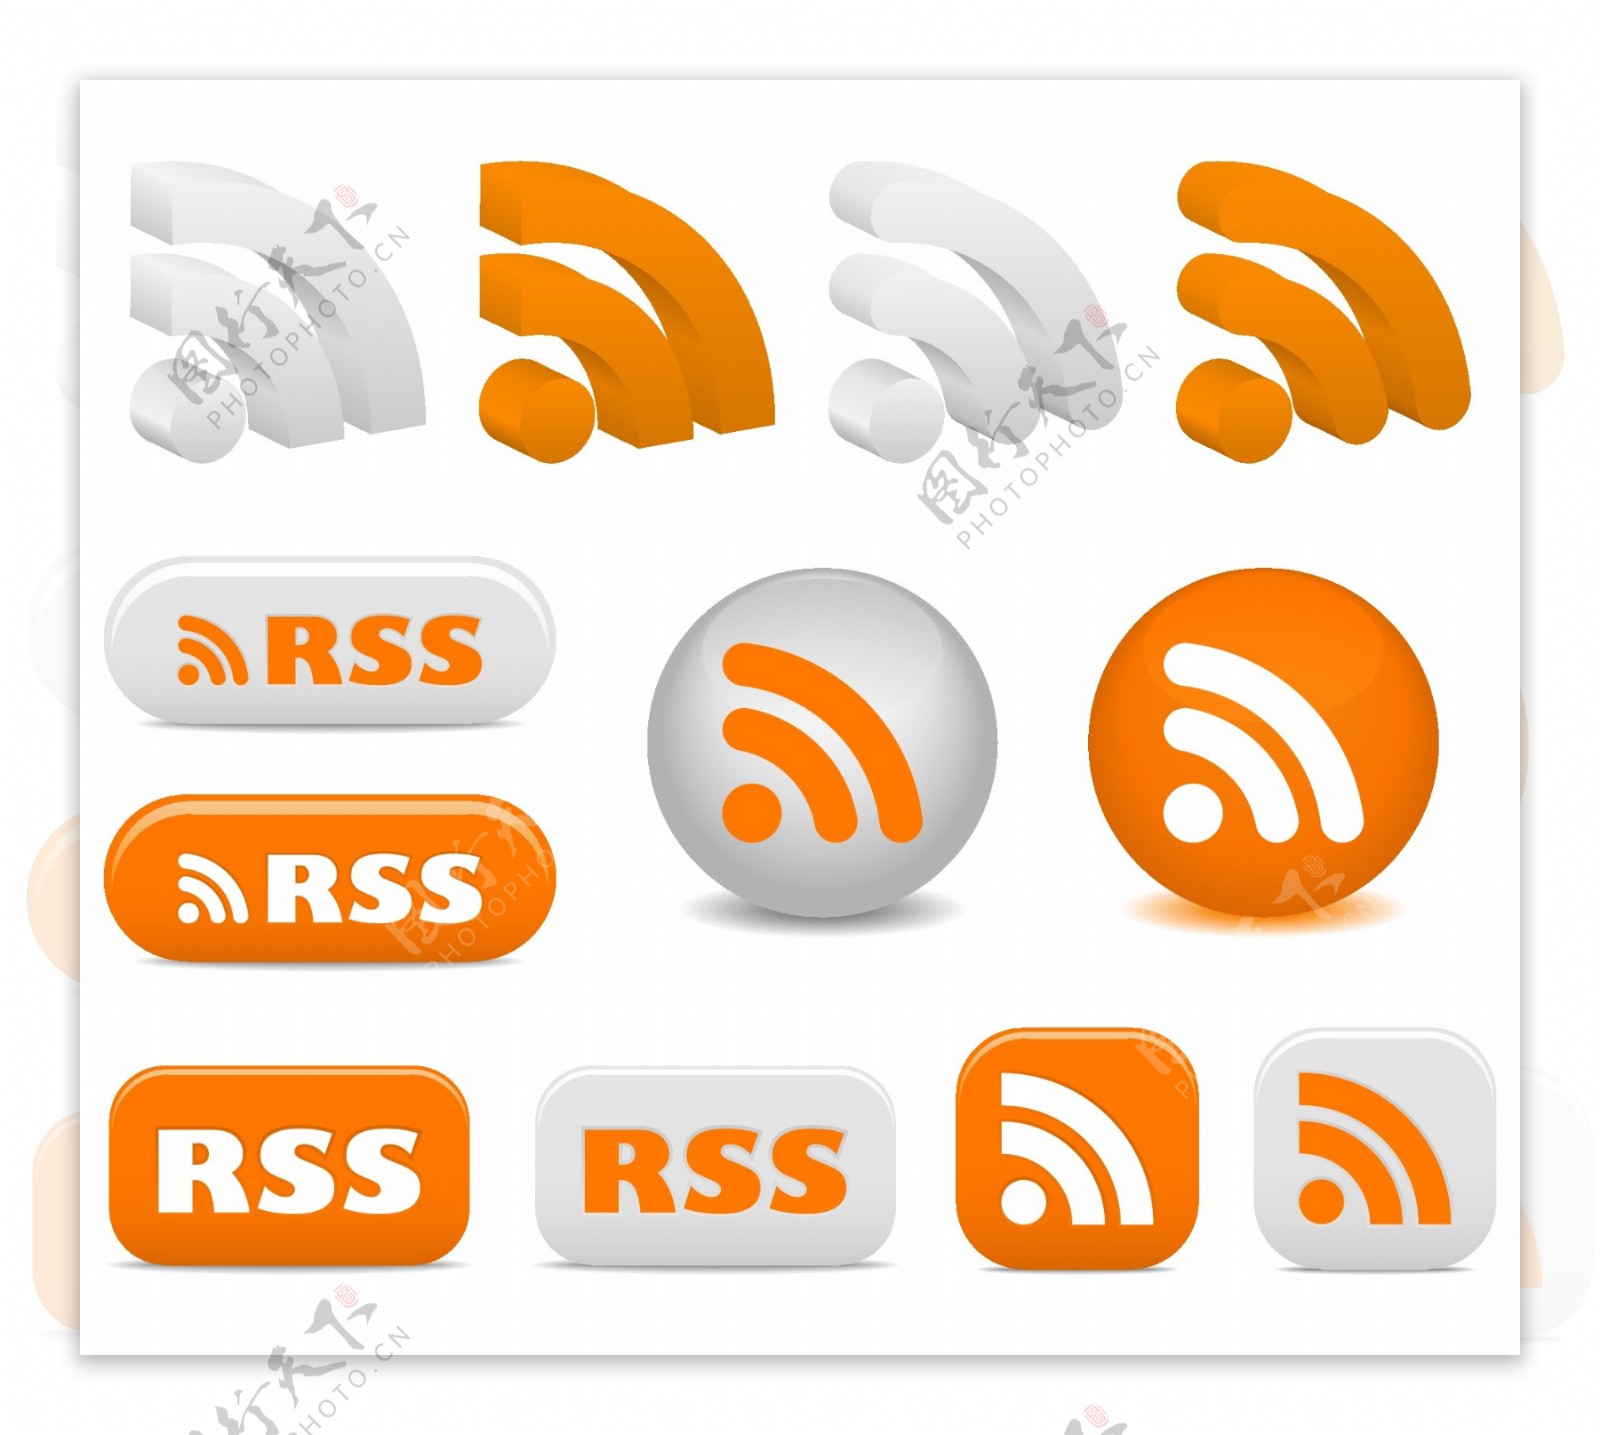 RSS订阅矢量图标矢量素材